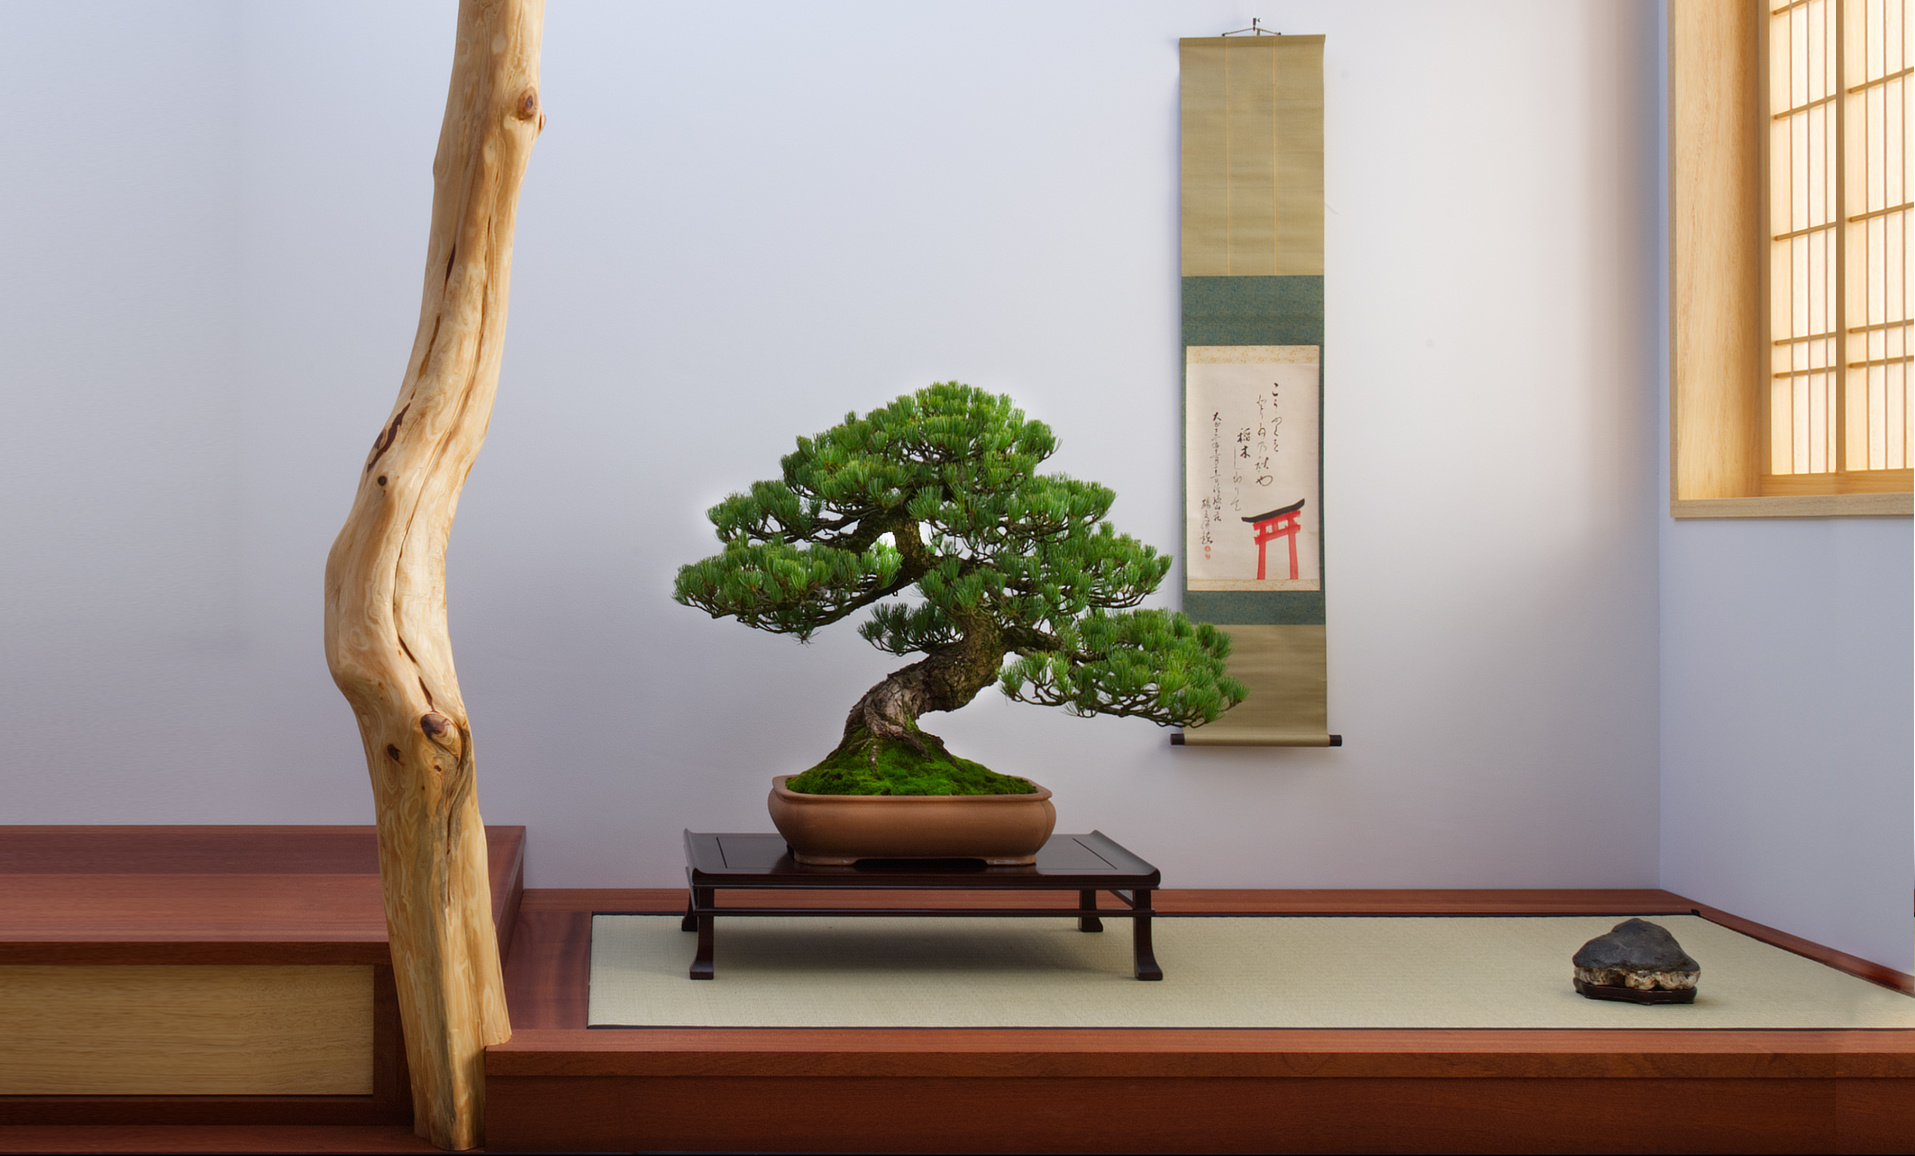 Una forma d'arte senza tempo: L'incanto di Maarten per il bonsai giapponese.